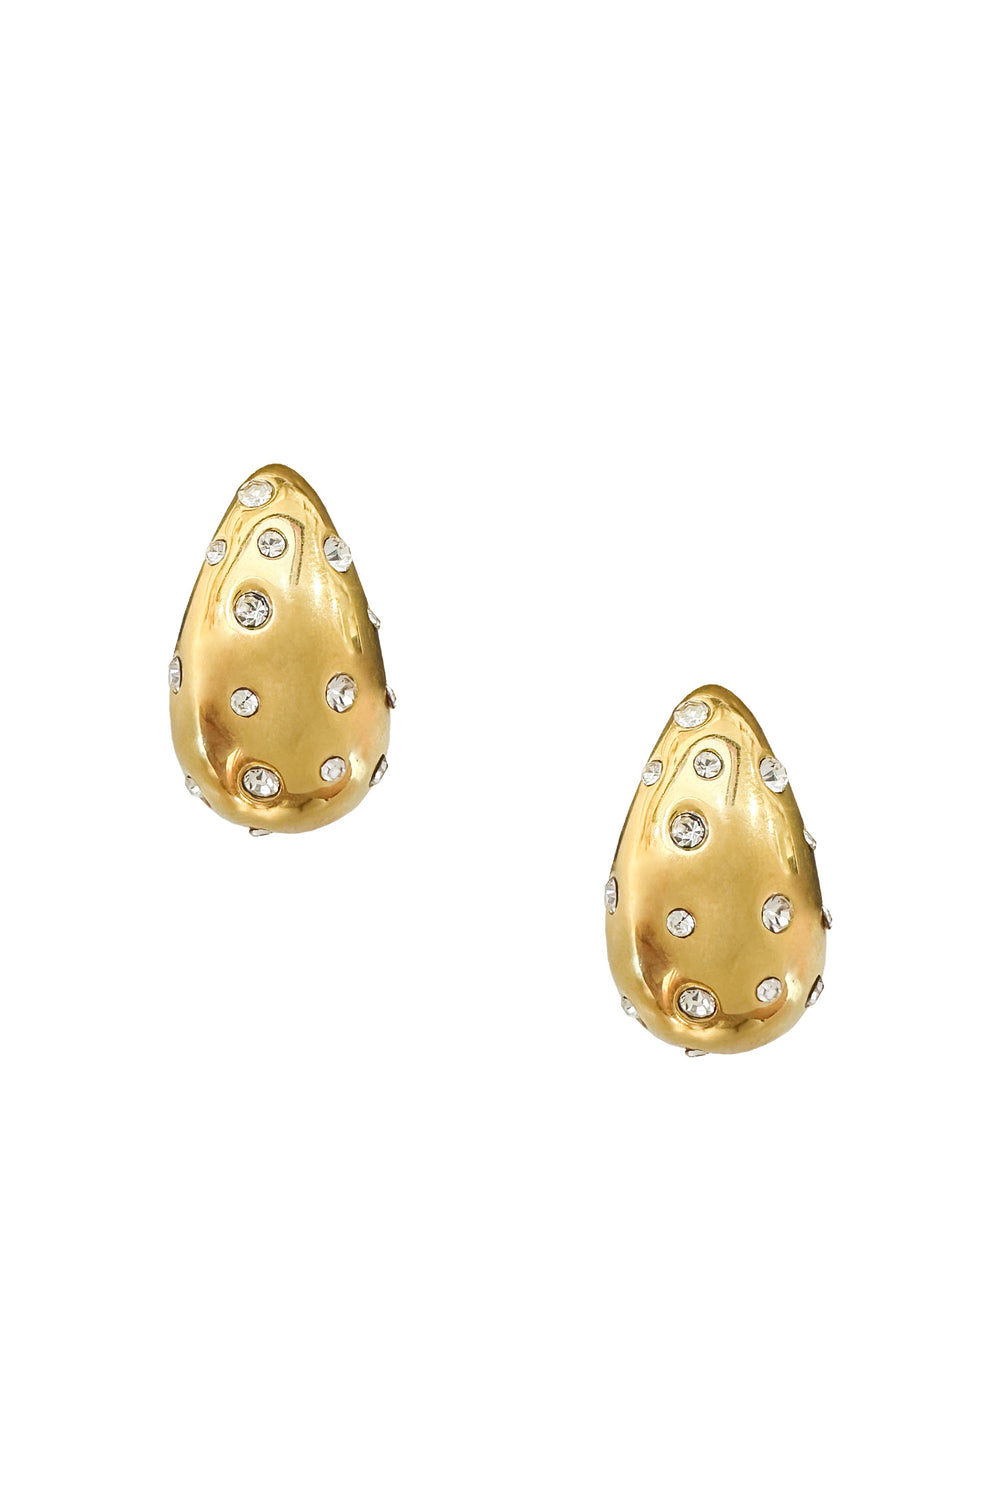 Evelyn Gold Earrings